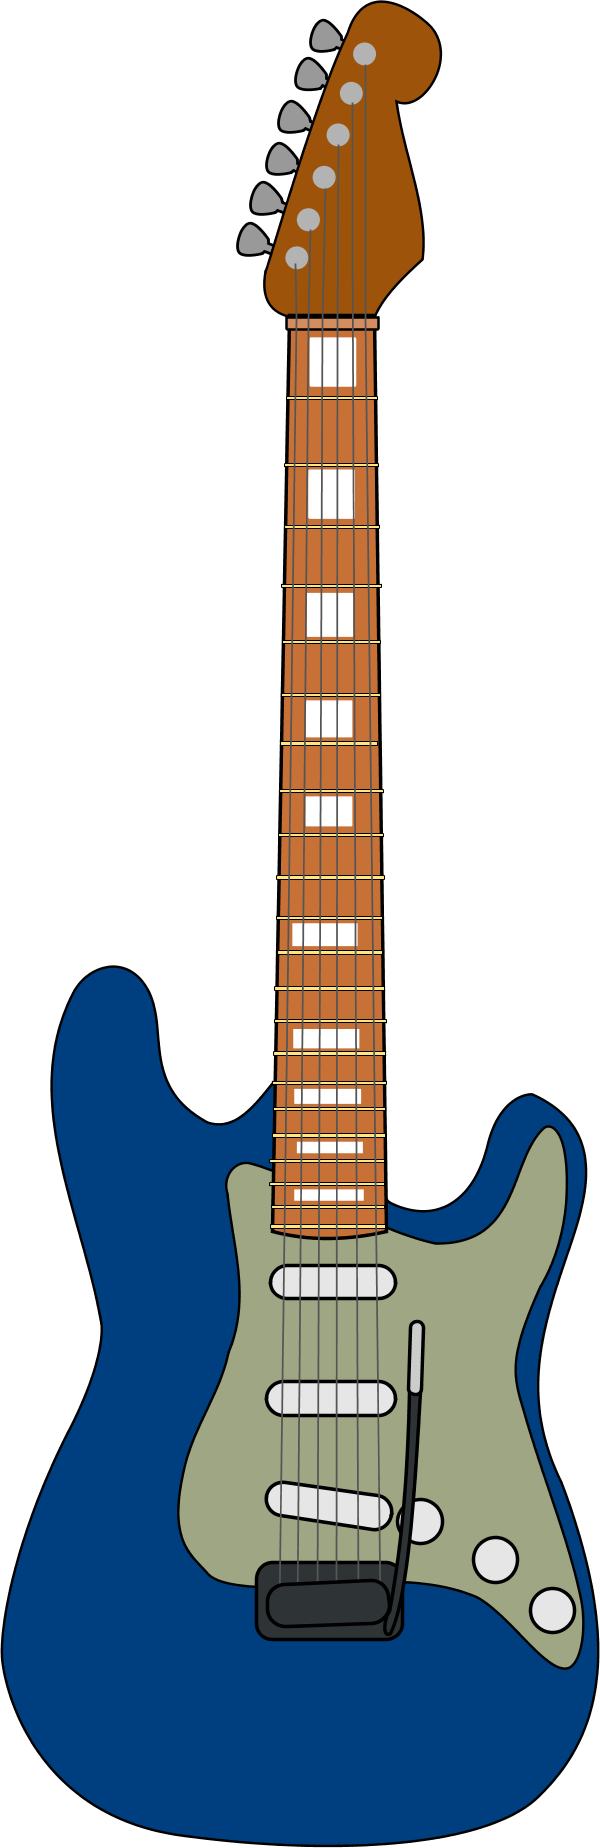 guitar clipart vector - photo #5